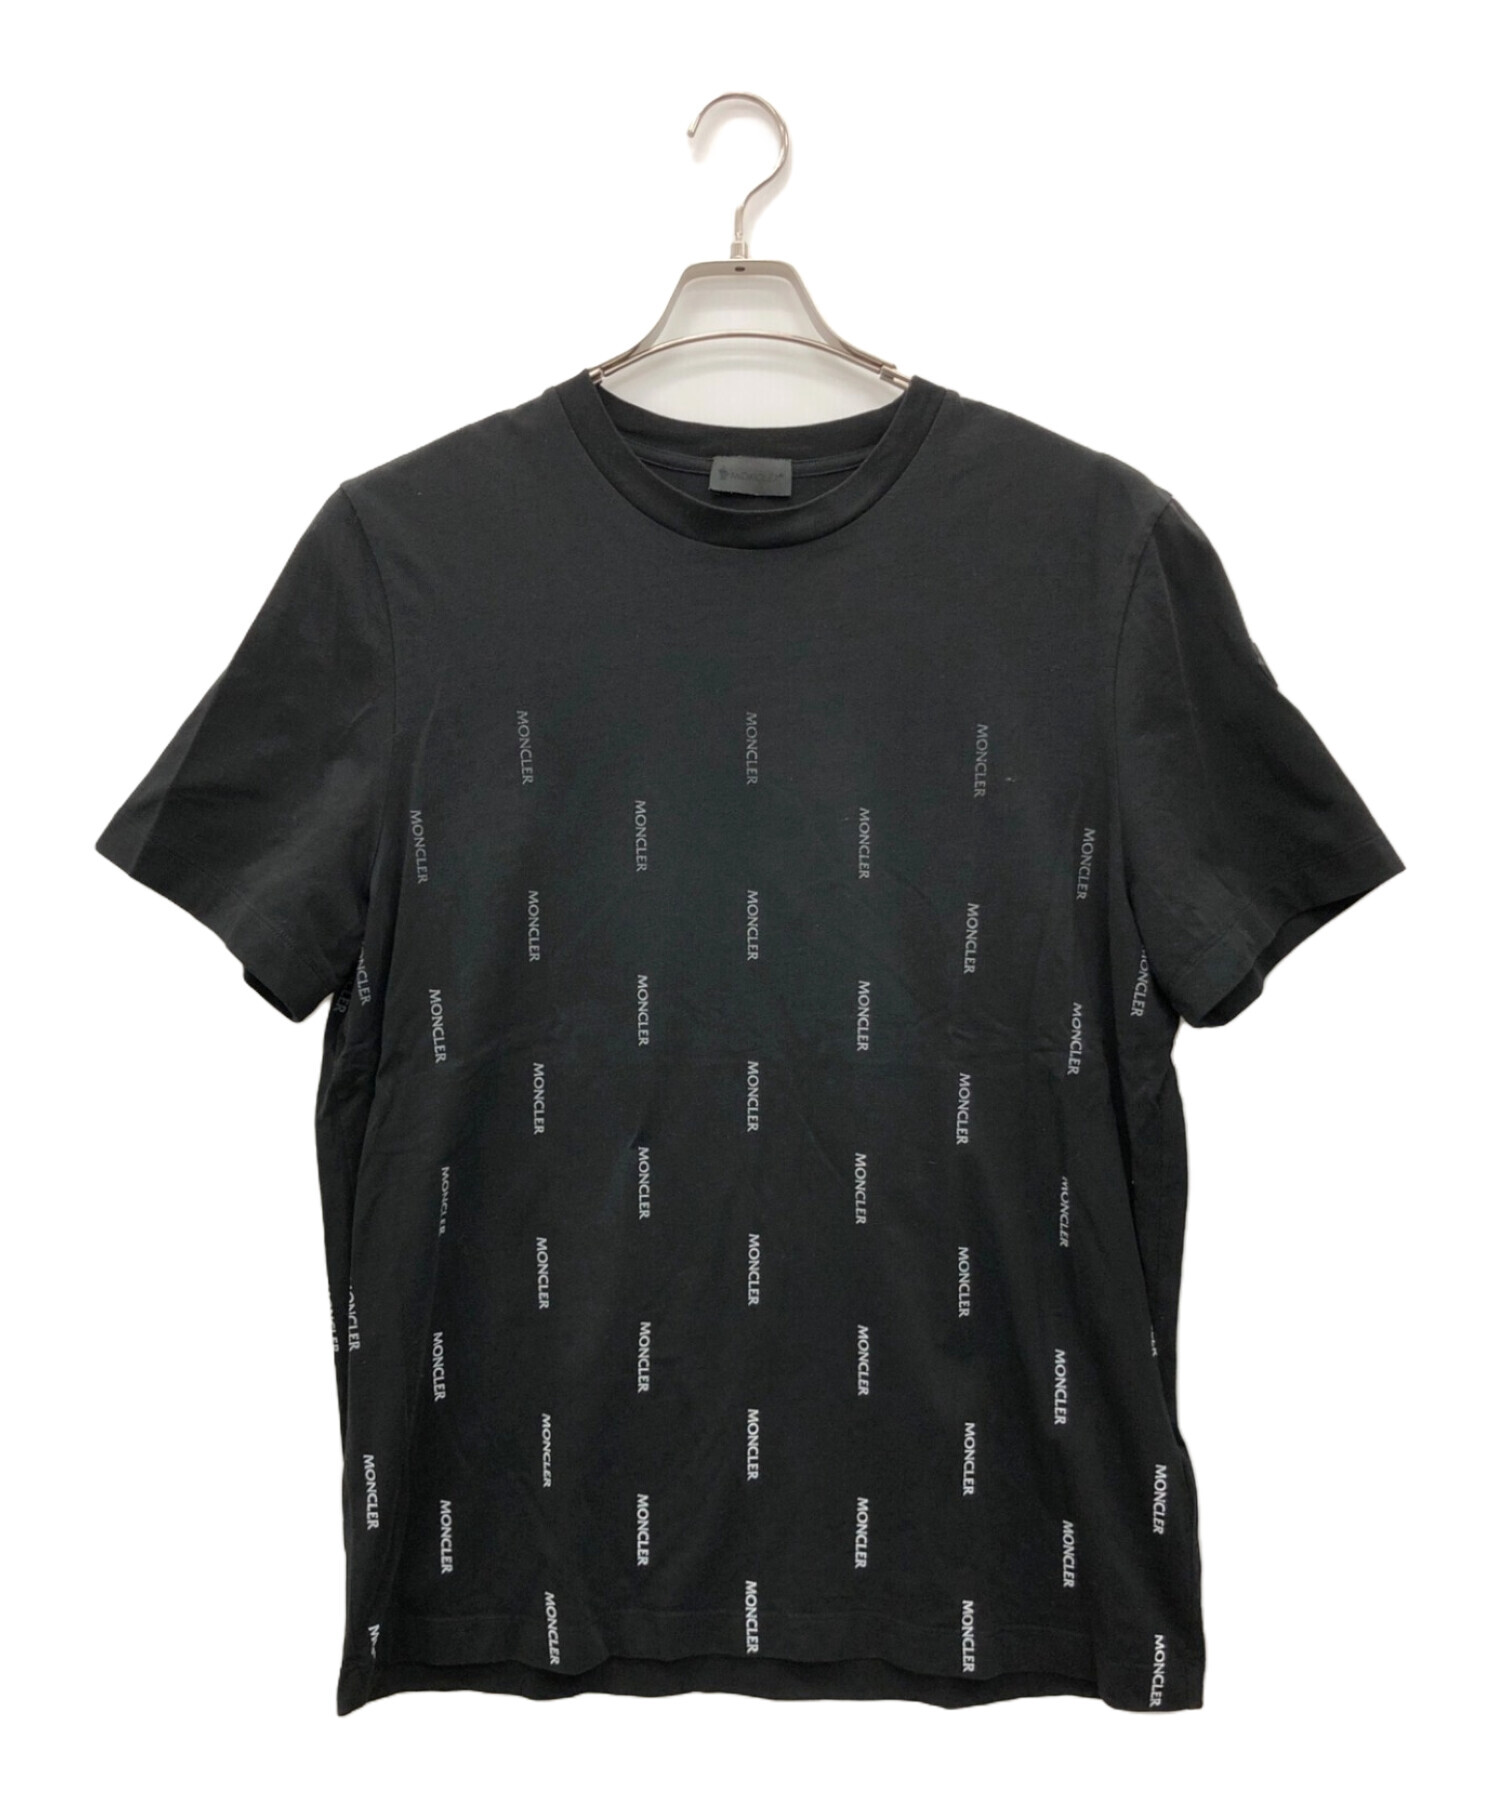 MONCLER (モンクレール) Tシャツ ブラック サイズ:M